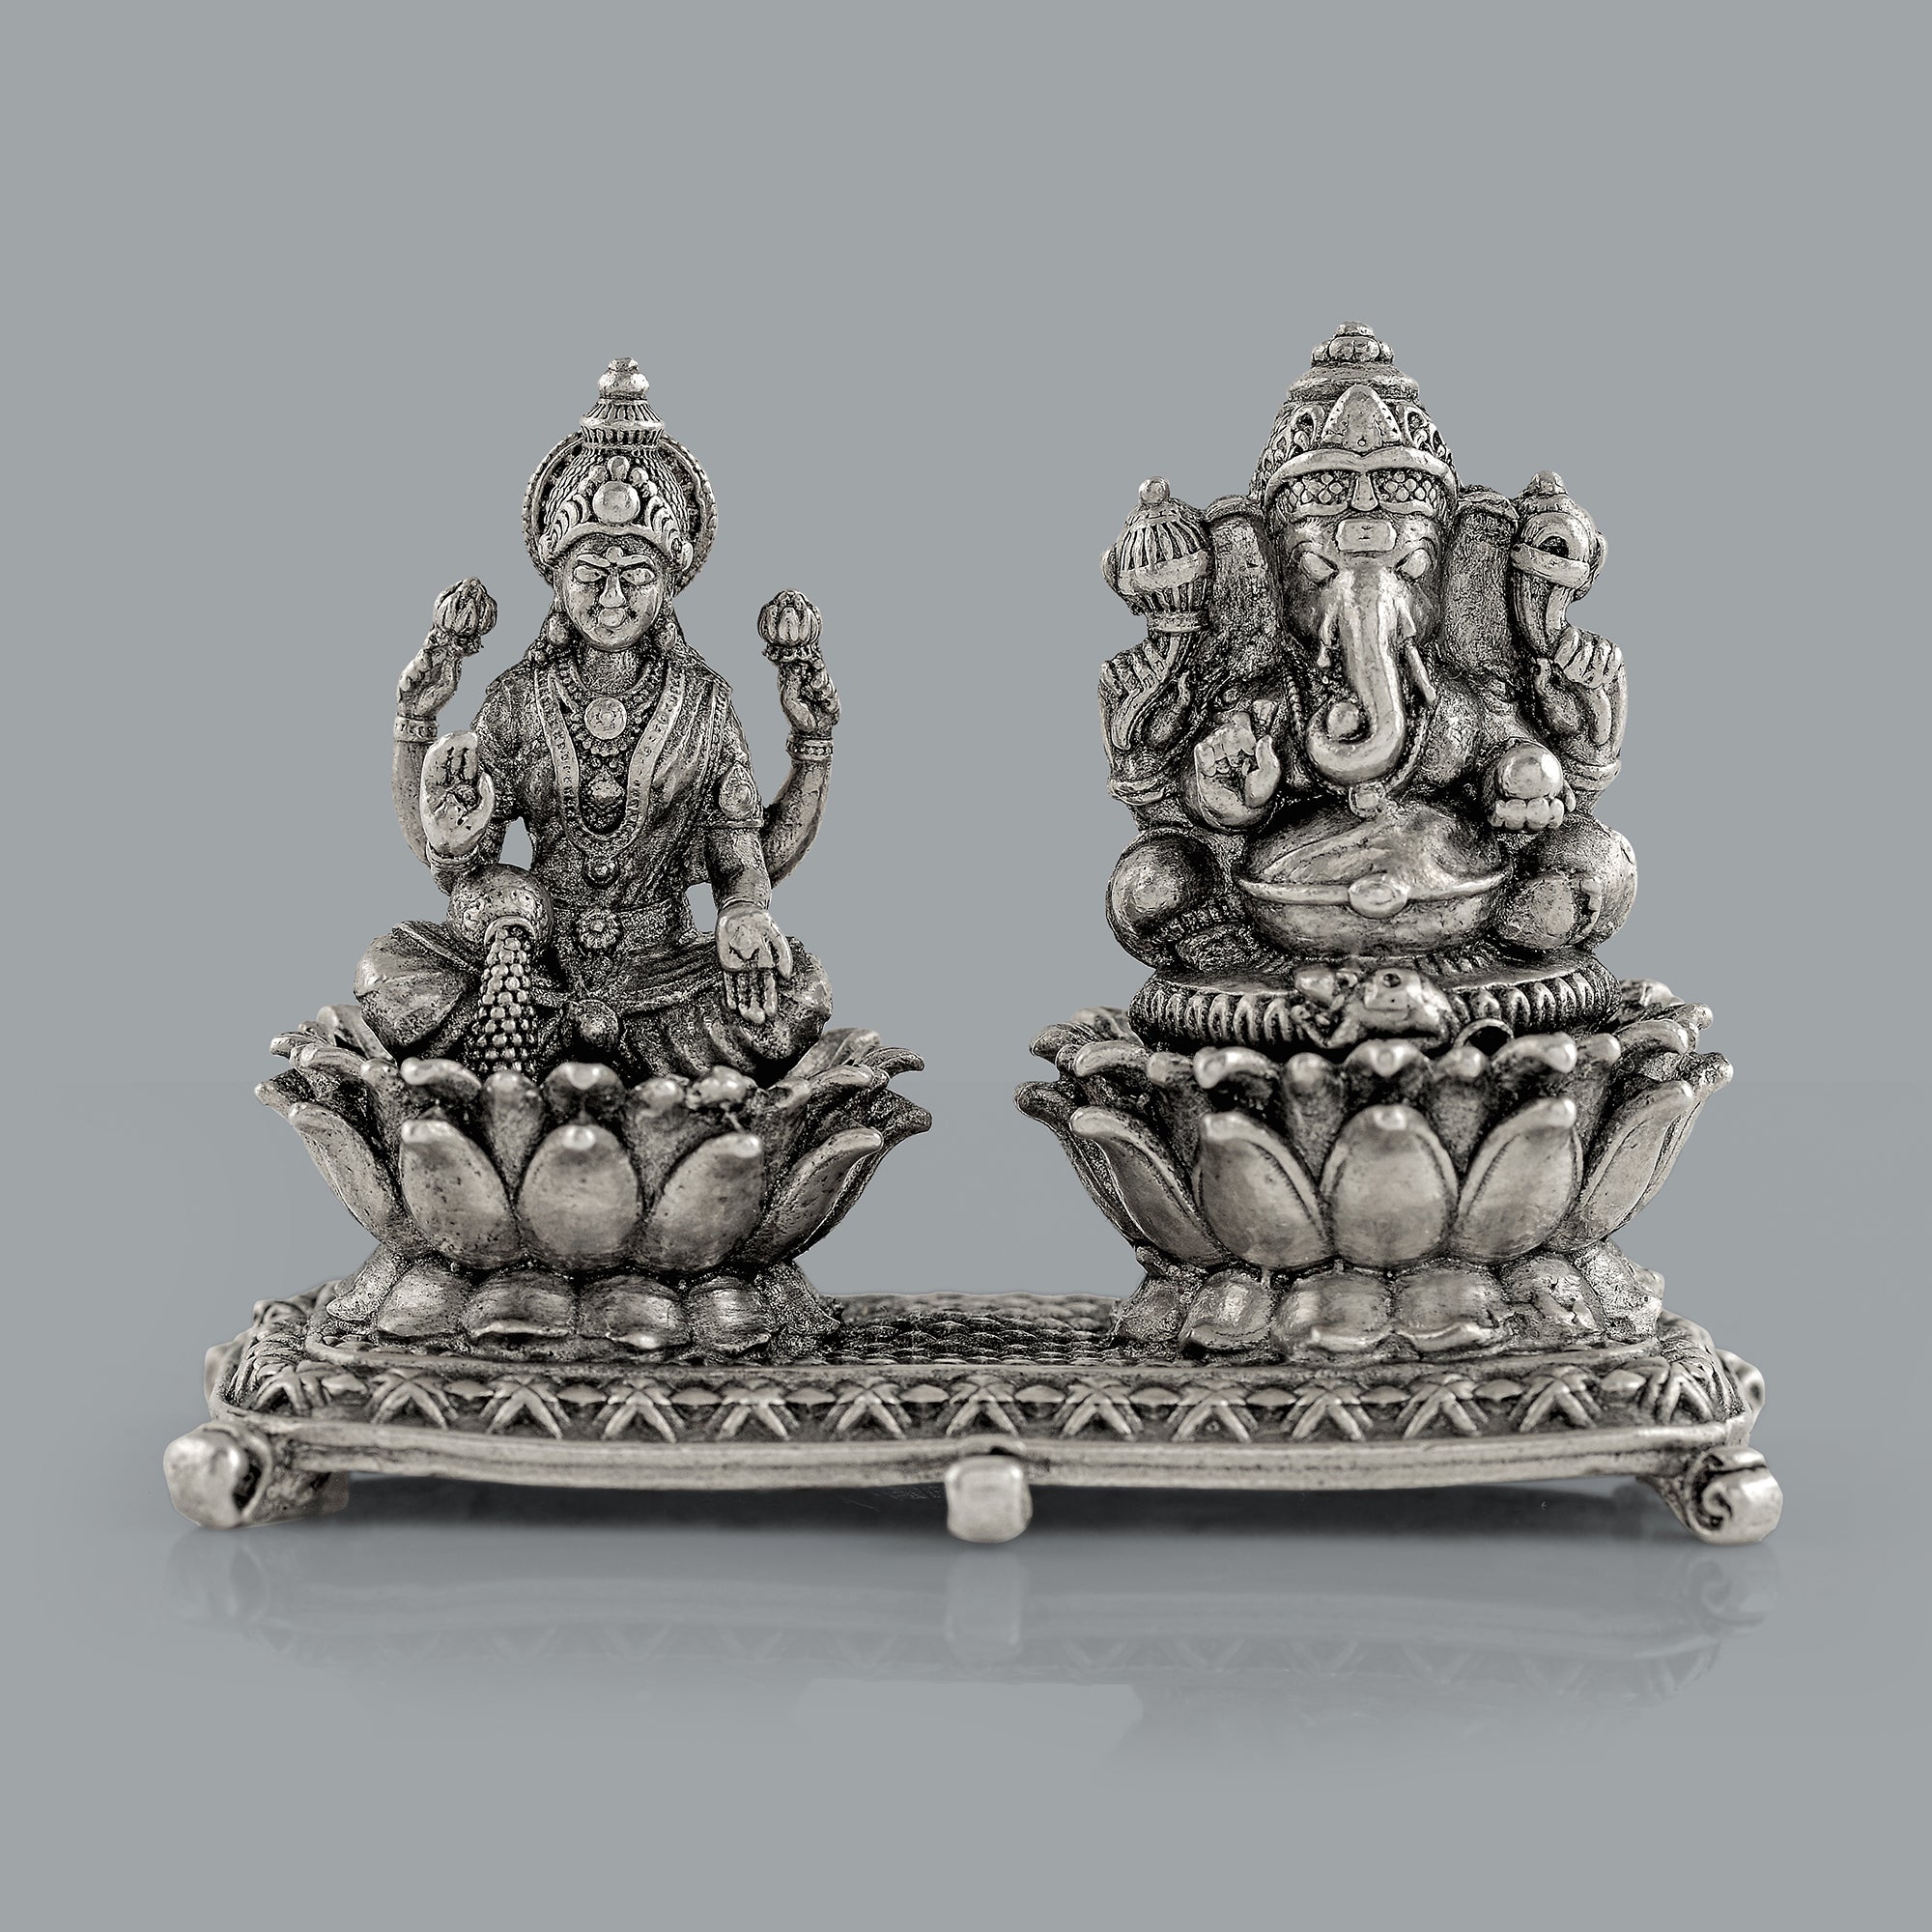 Antique Laxmi Ganapati Idol In Silver